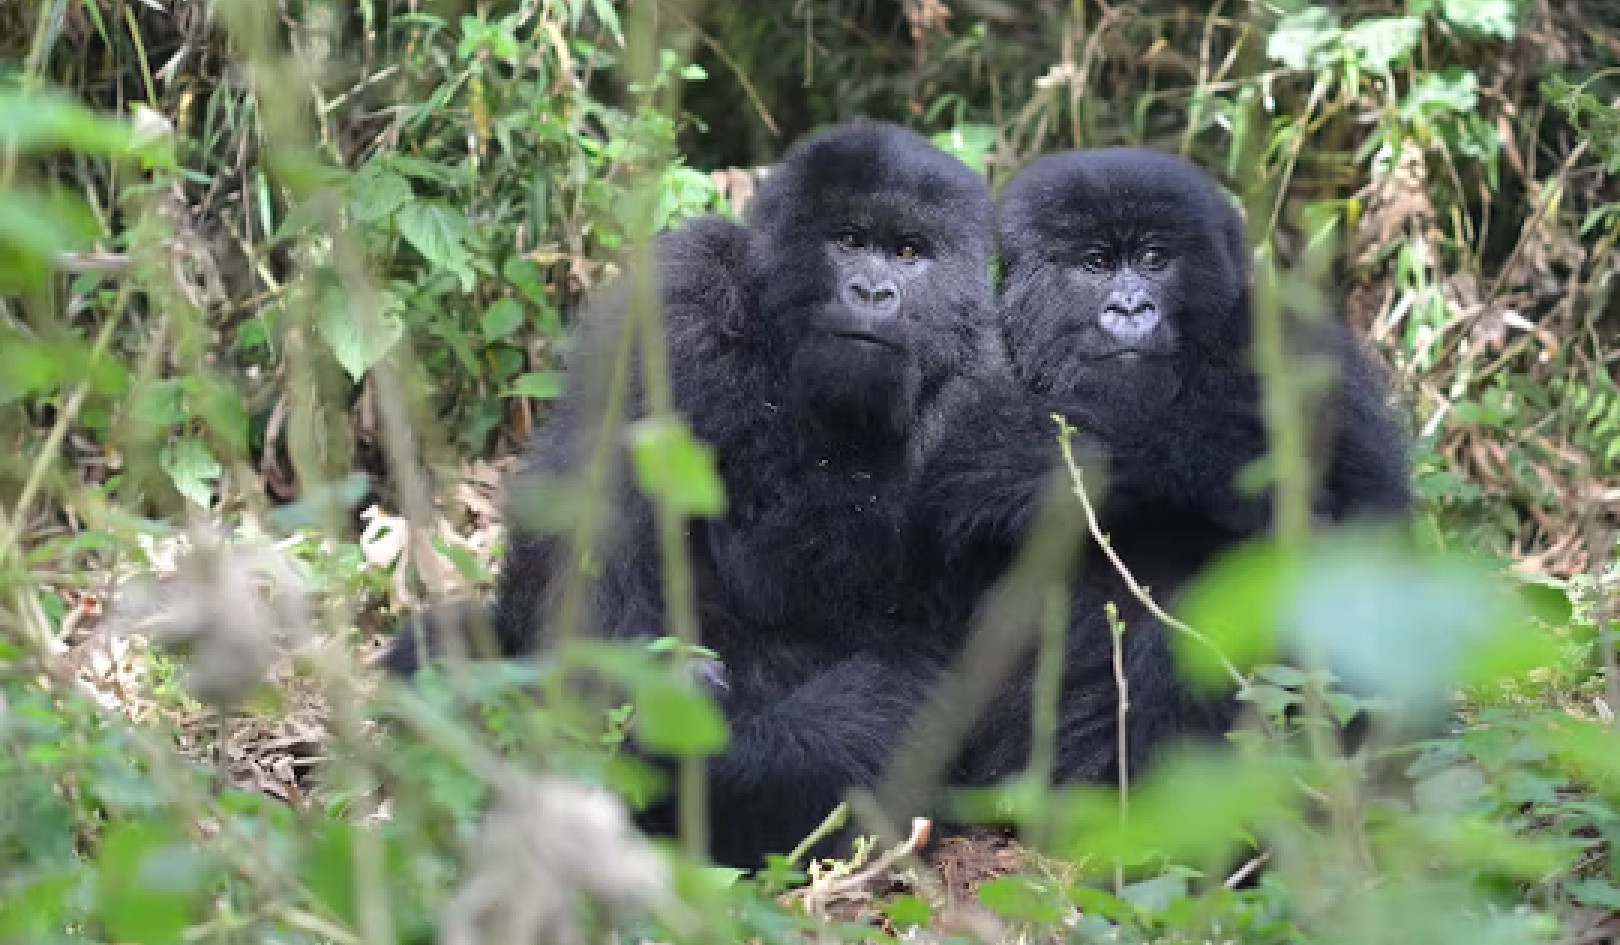 Trotz aller Widrigkeiten gedeihen: Resiliente Gorillas enthüllen Hinweise darauf, wie sie das Unglück ihrer Kindheit überwinden können